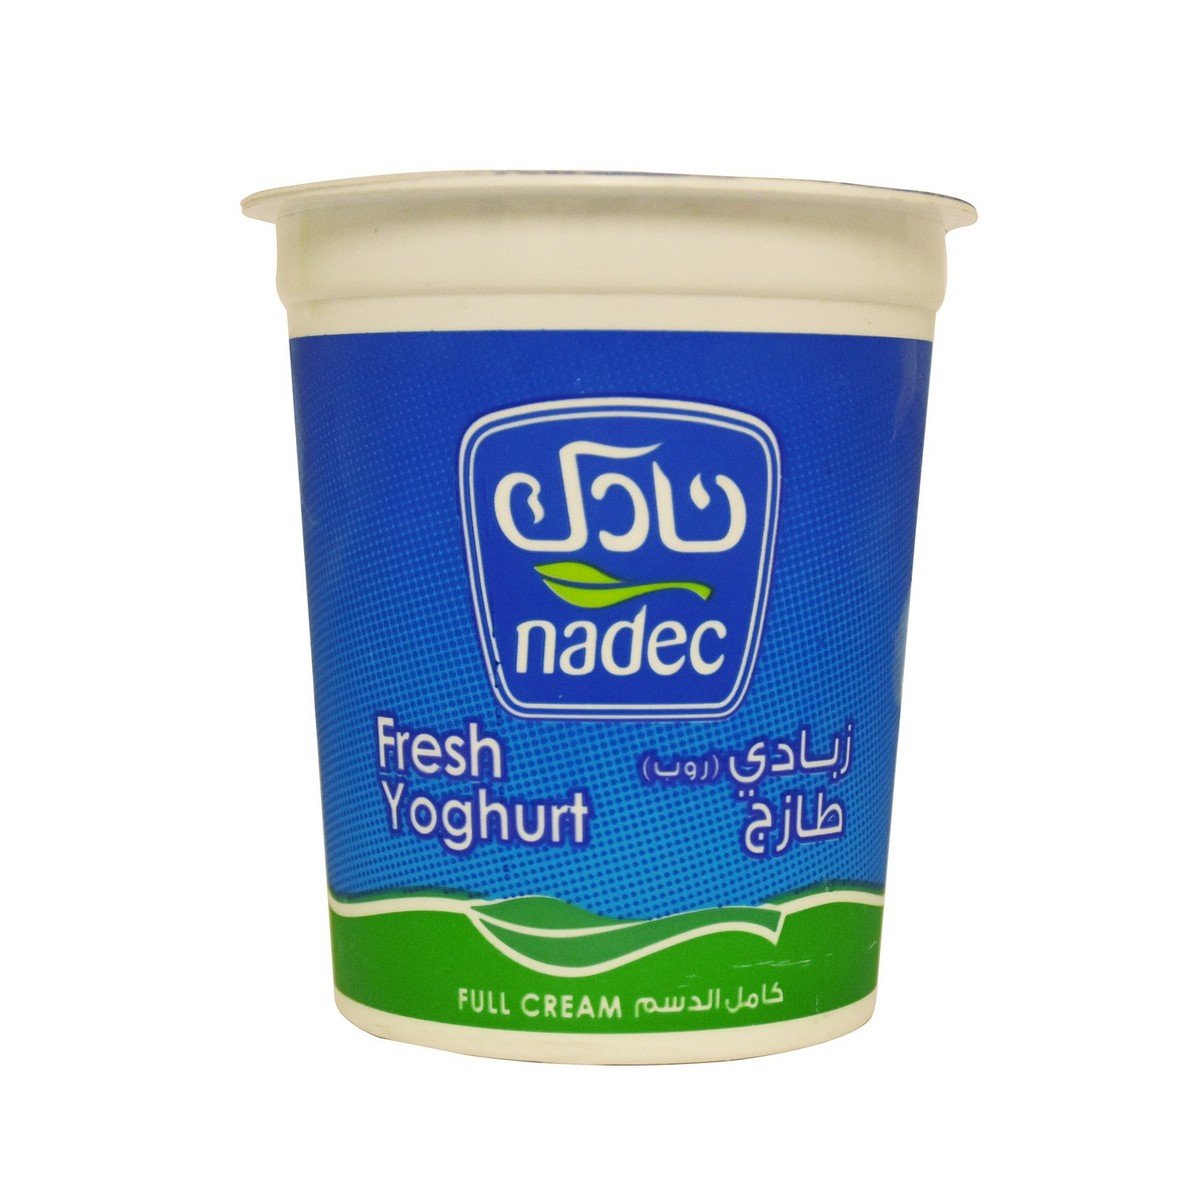 اشتري قم بشراء نادك زبادي طازج كامل الدسم 400جم Online at Best Price من الموقع - من لولو هايبر ماركت Plain Yoghurt في السعودية